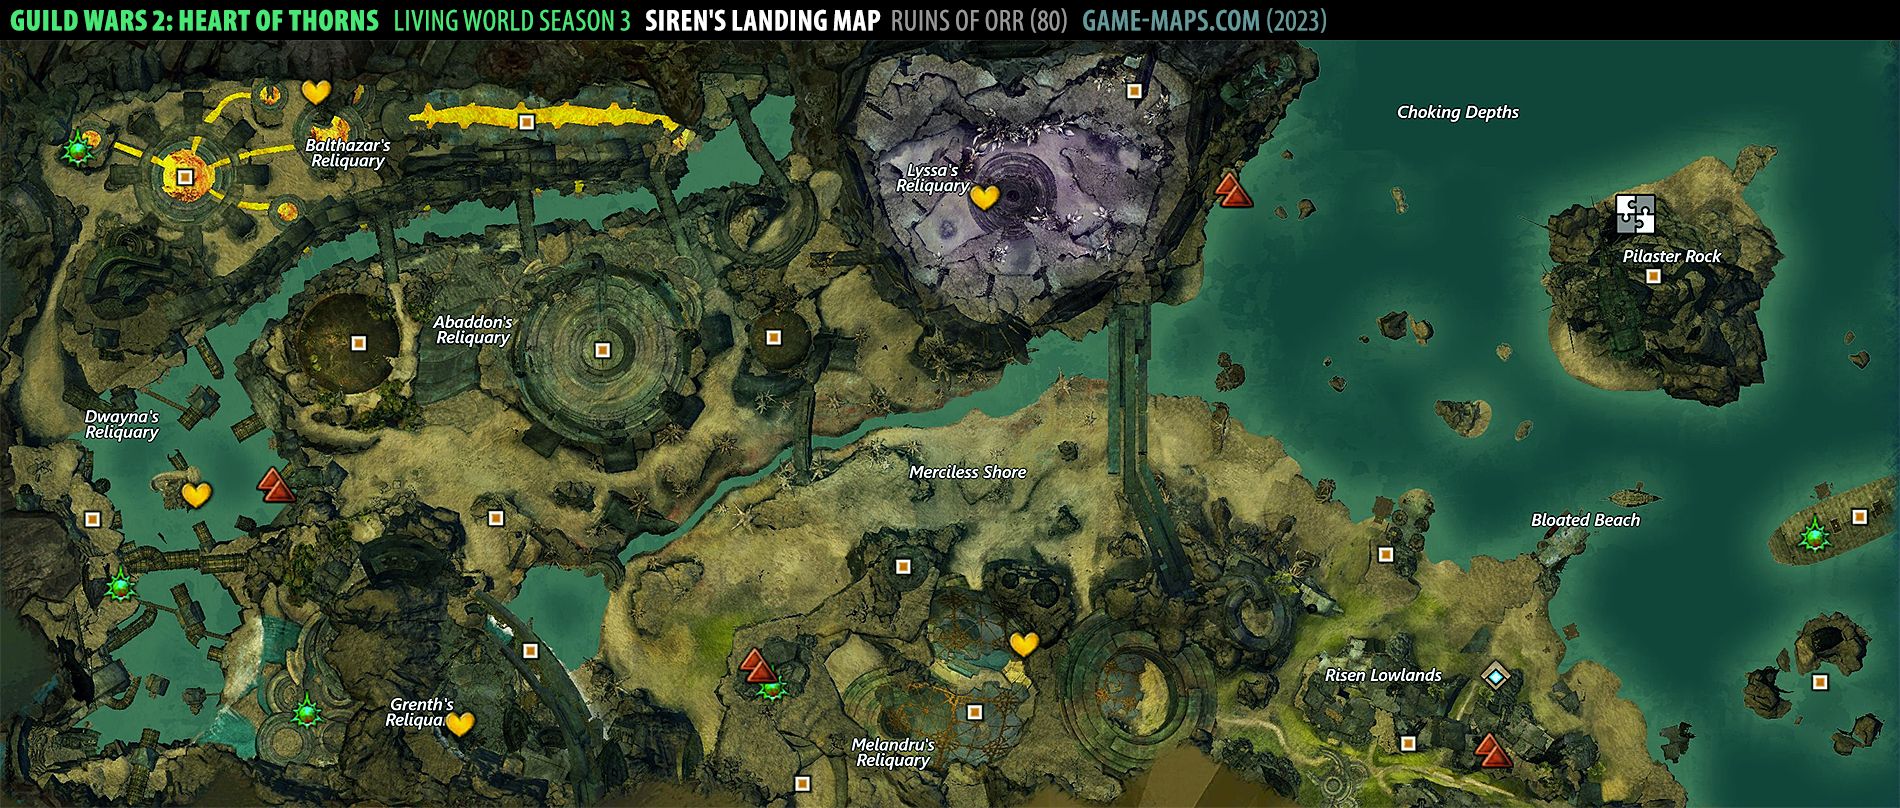 Siren's Landing Map Guild Wars 2